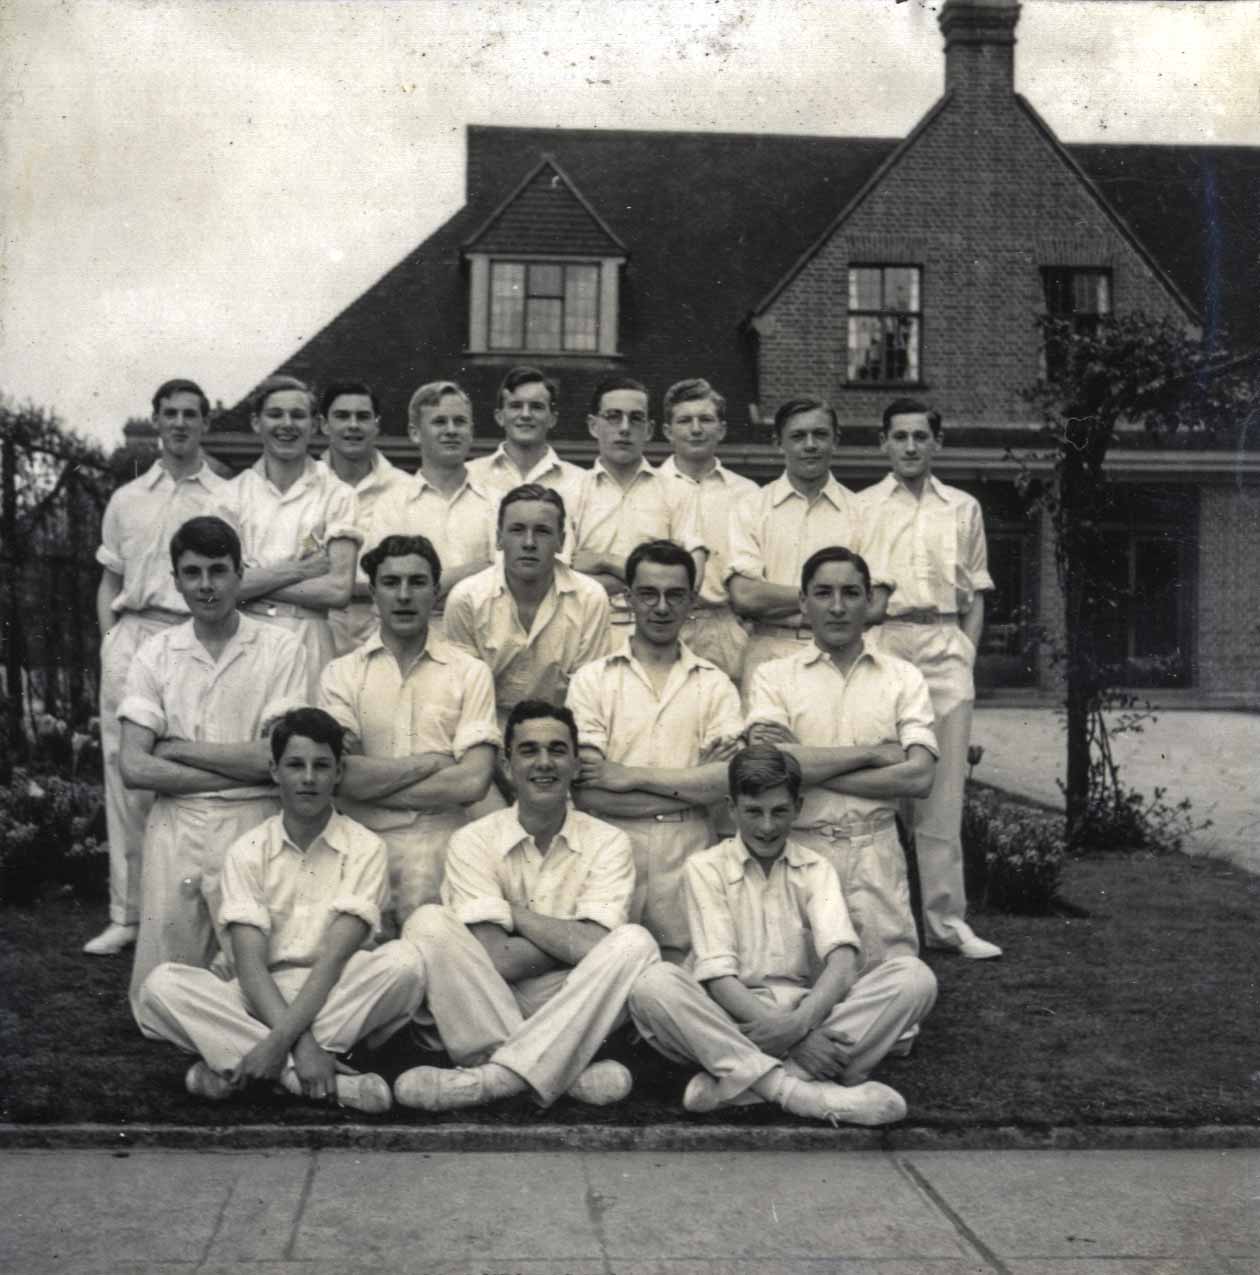 1941 - Gymnastics team St Edwards' School, Oxford